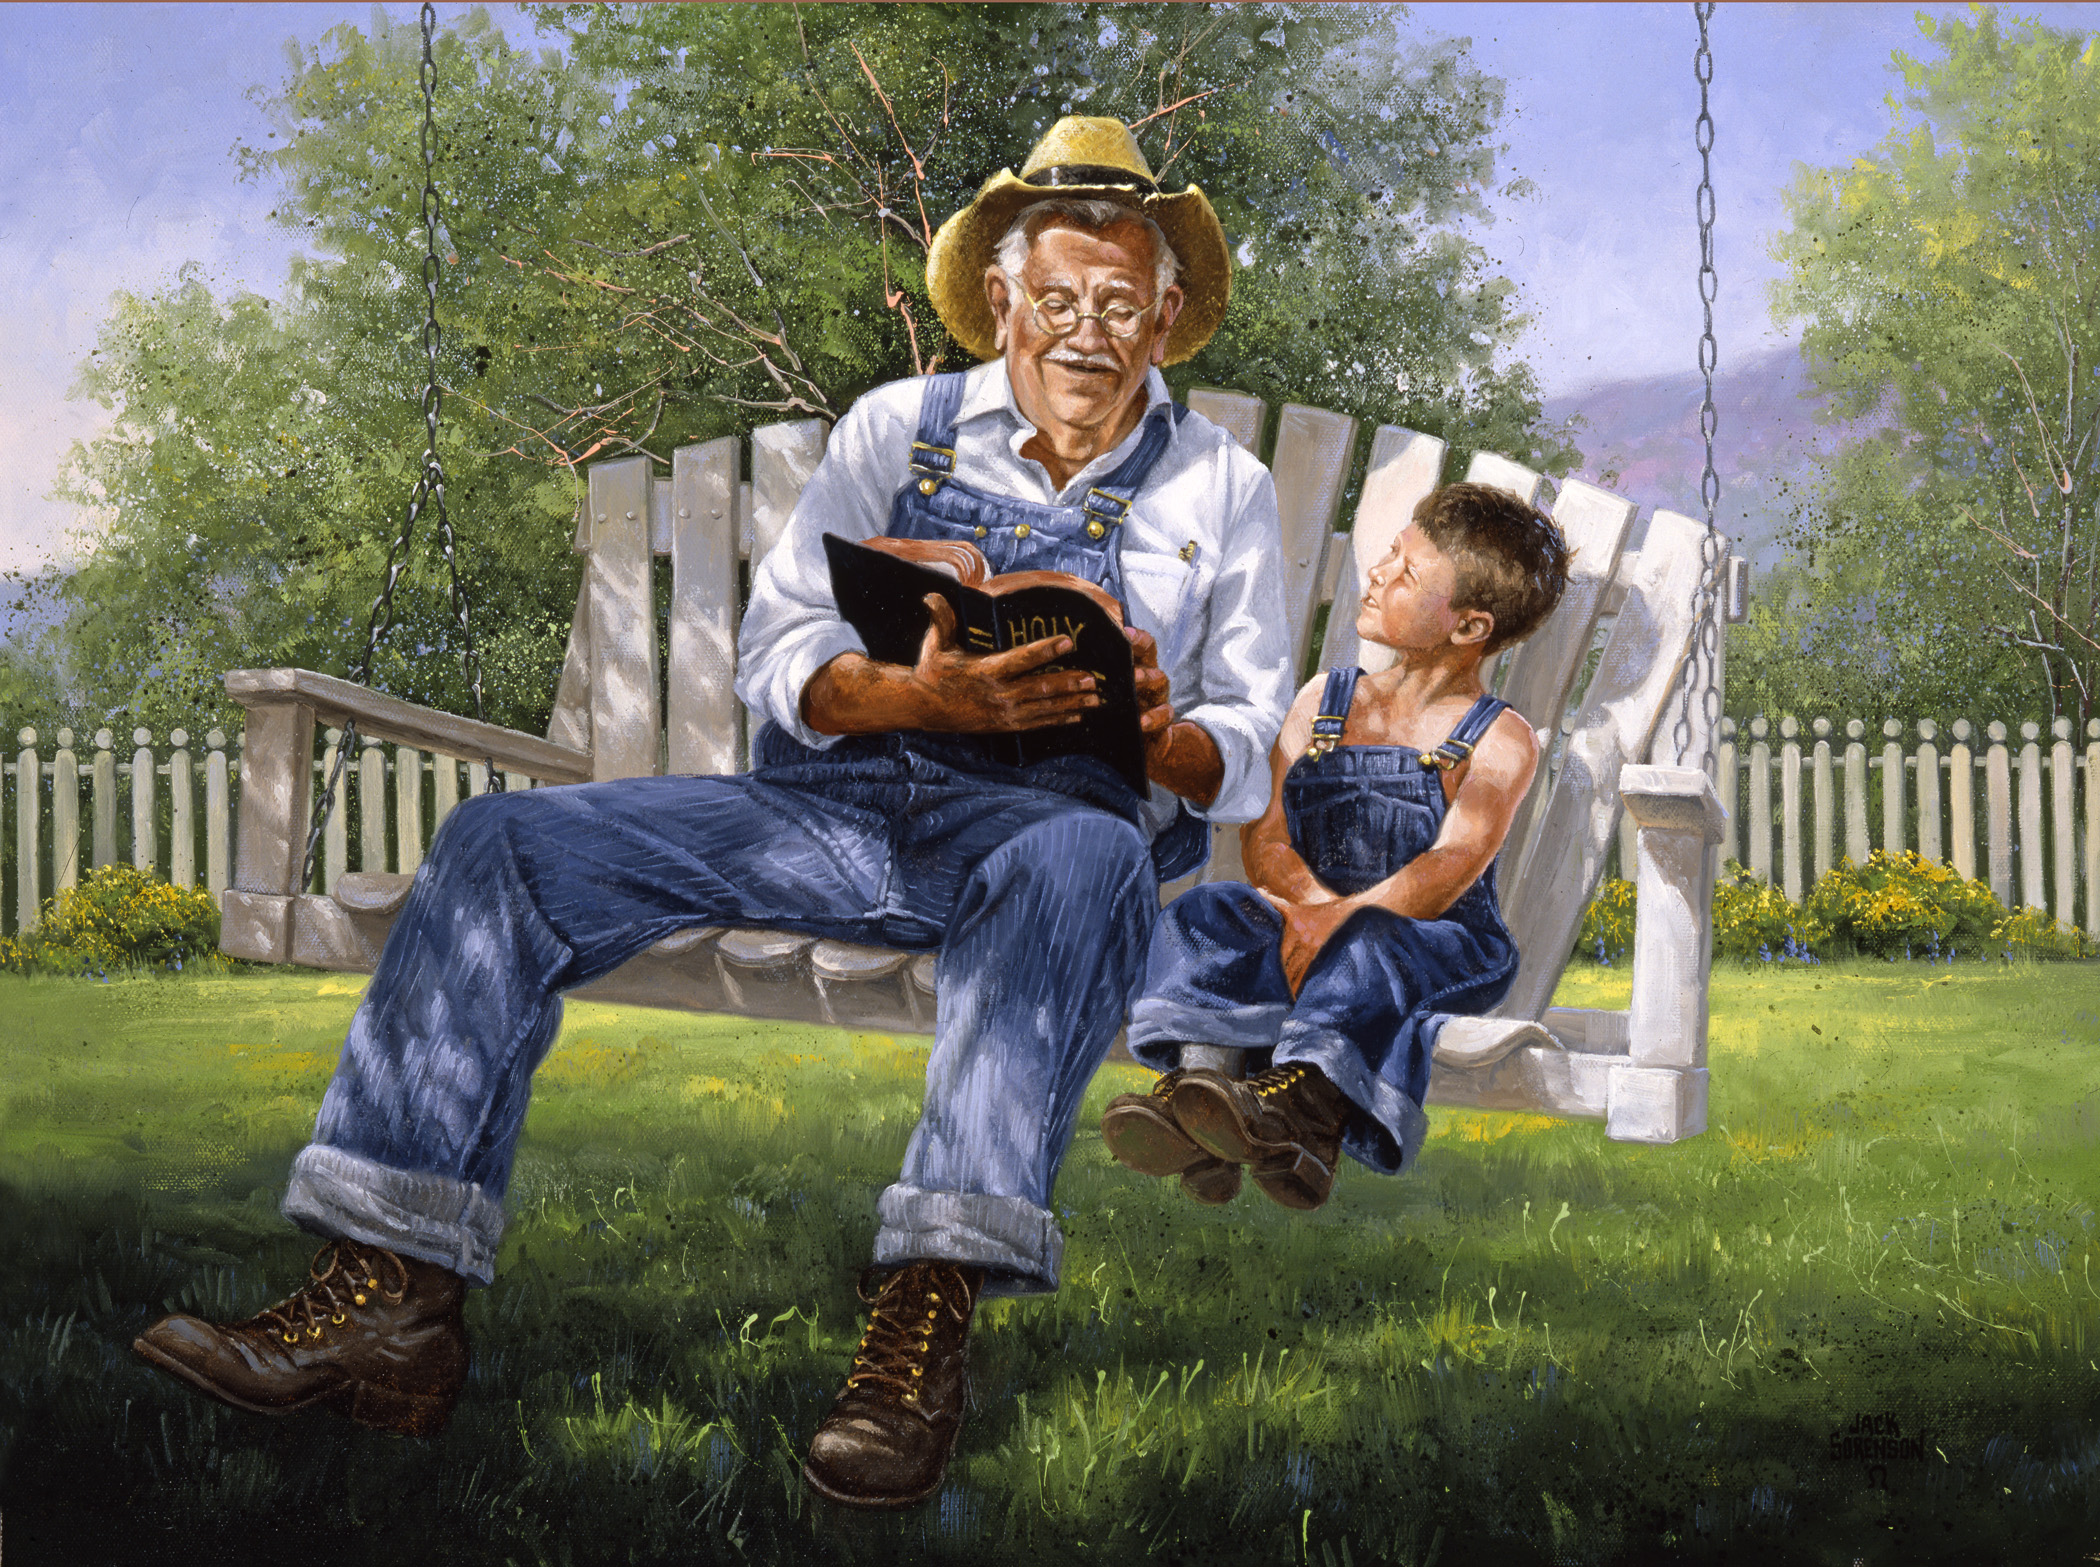 Tác phẩm “The Good Book” (Cuốn Sách Hay) vẽ bởi họa sĩ Jack Sorenson. (Ảnh: Đăng dưới sự cho phép của ©Jack Sorenson Fine Art, Inc.)